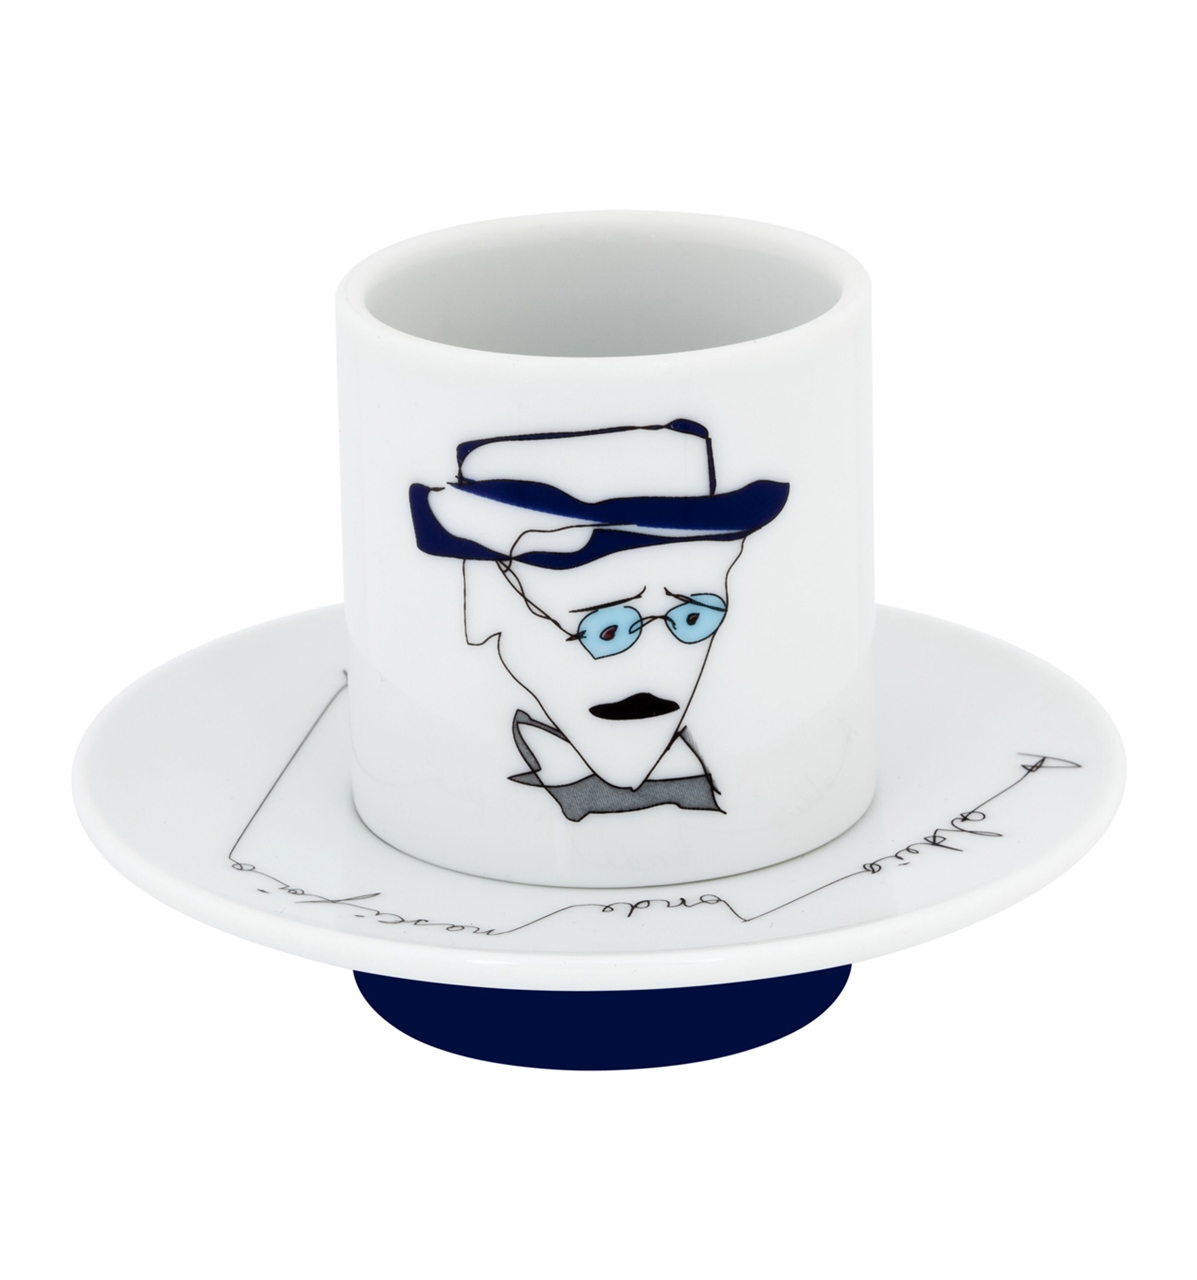 vista-alegre-collection-heteronimos-coffee-cup2-saucer